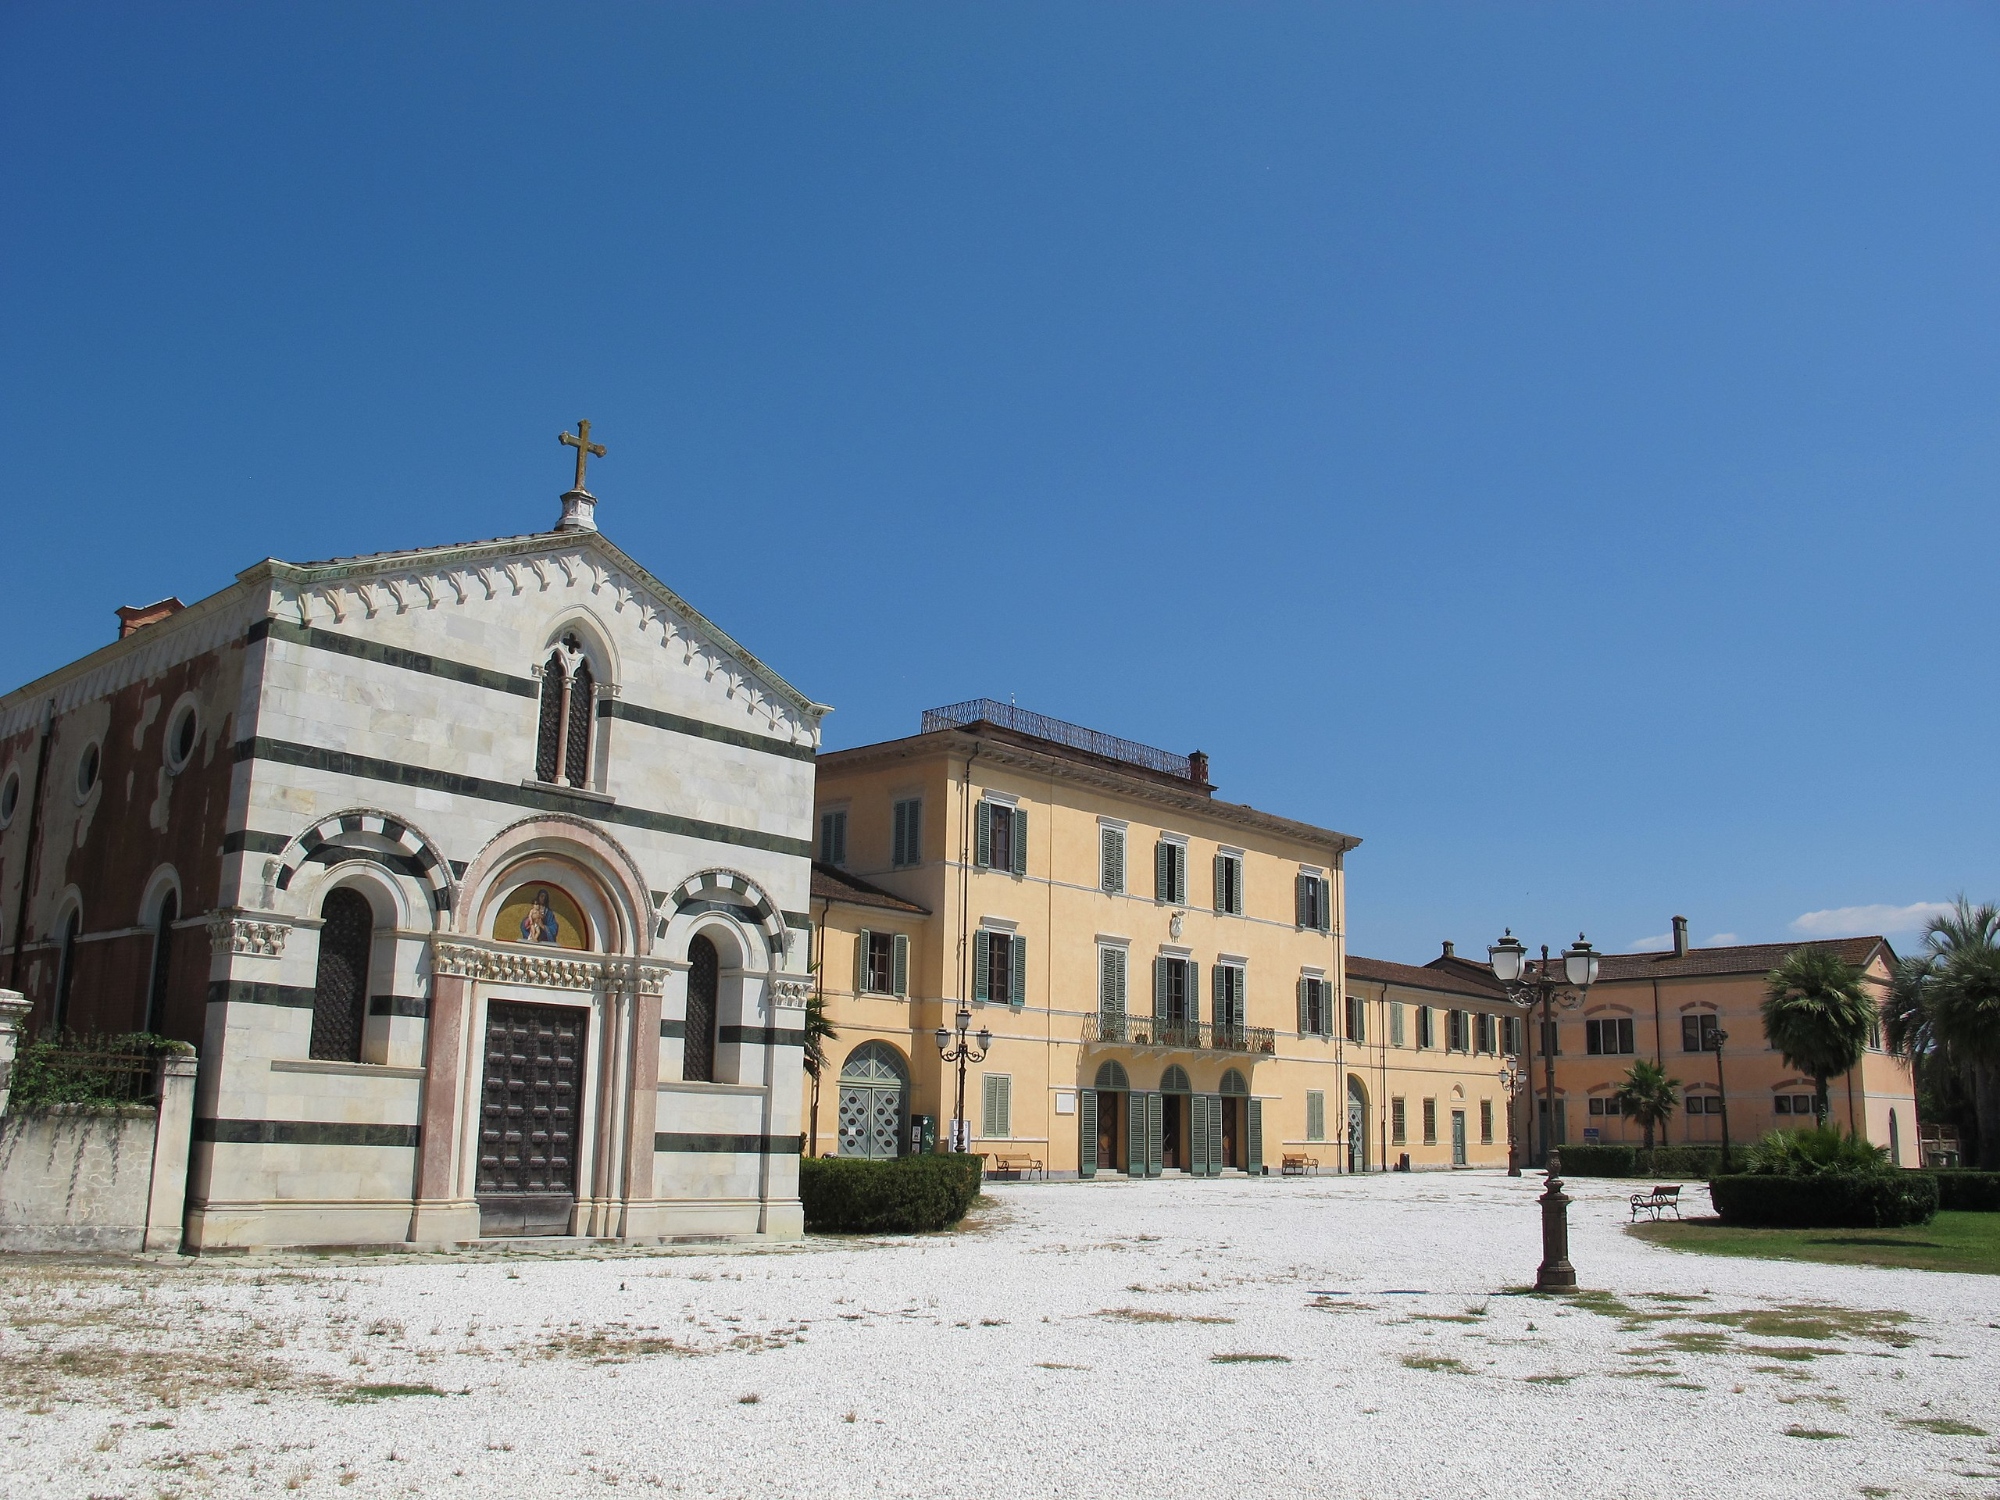 Villa Borbone in Viareggio